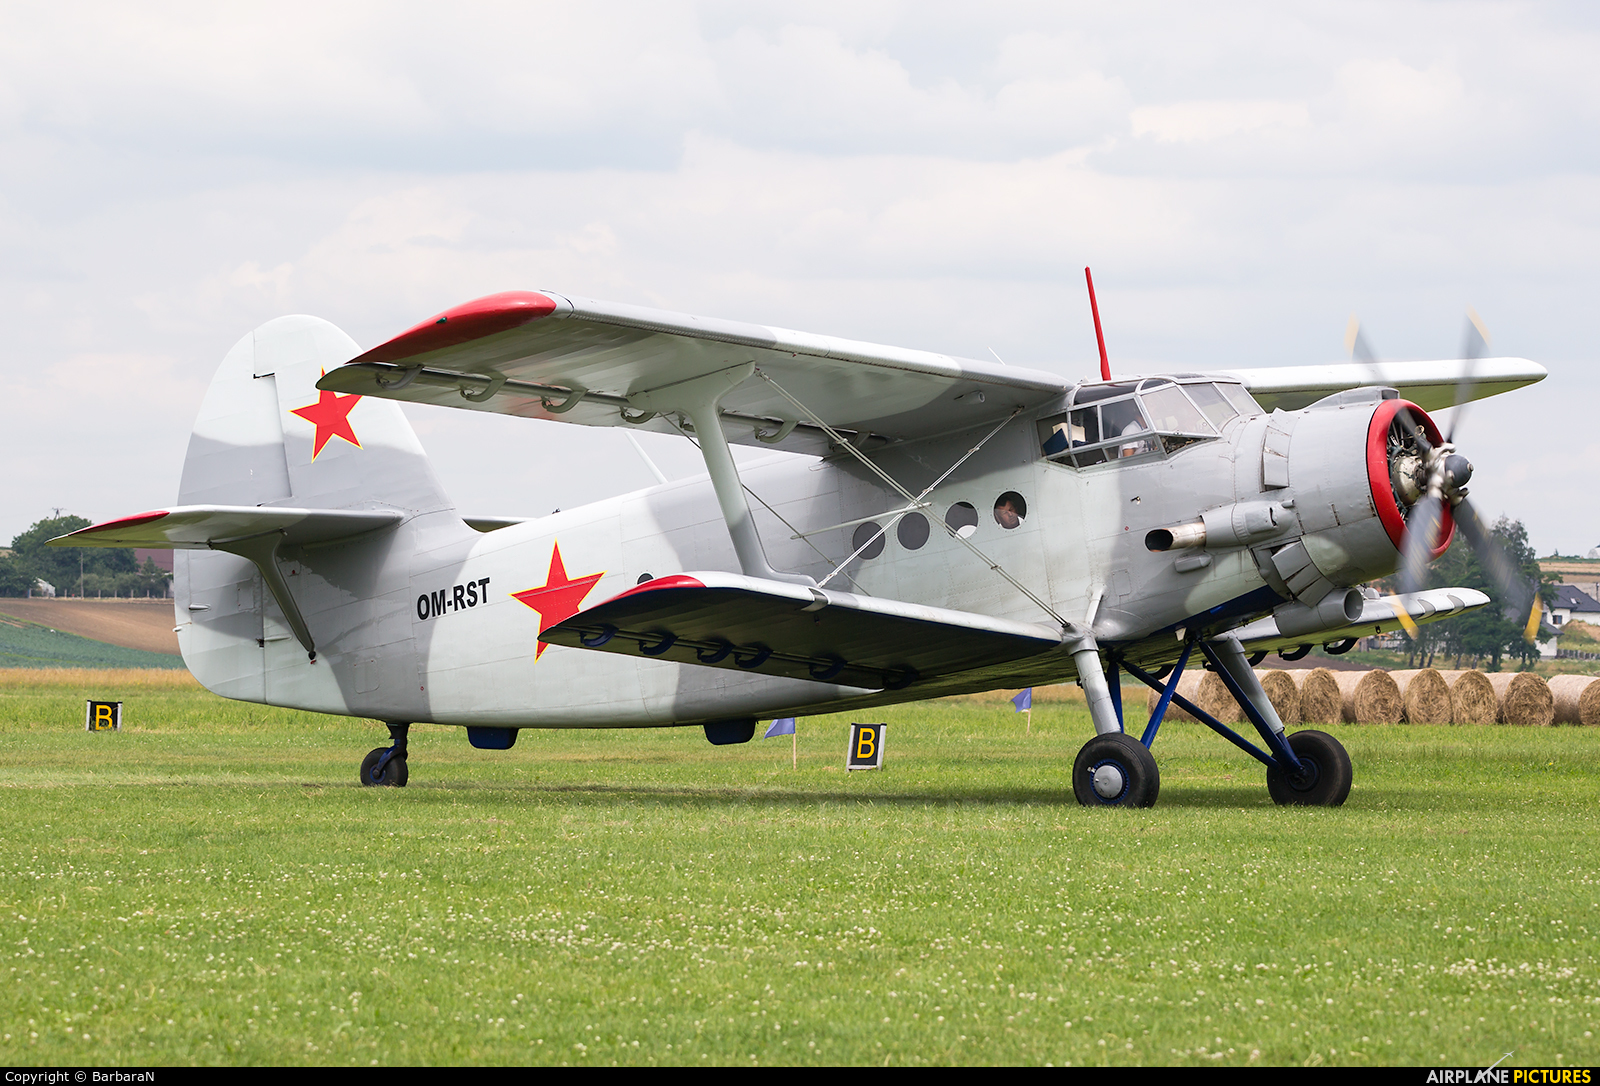 Aeroklub Kosice OM-RST aircraft at Kraków - Pobiednik Wielki